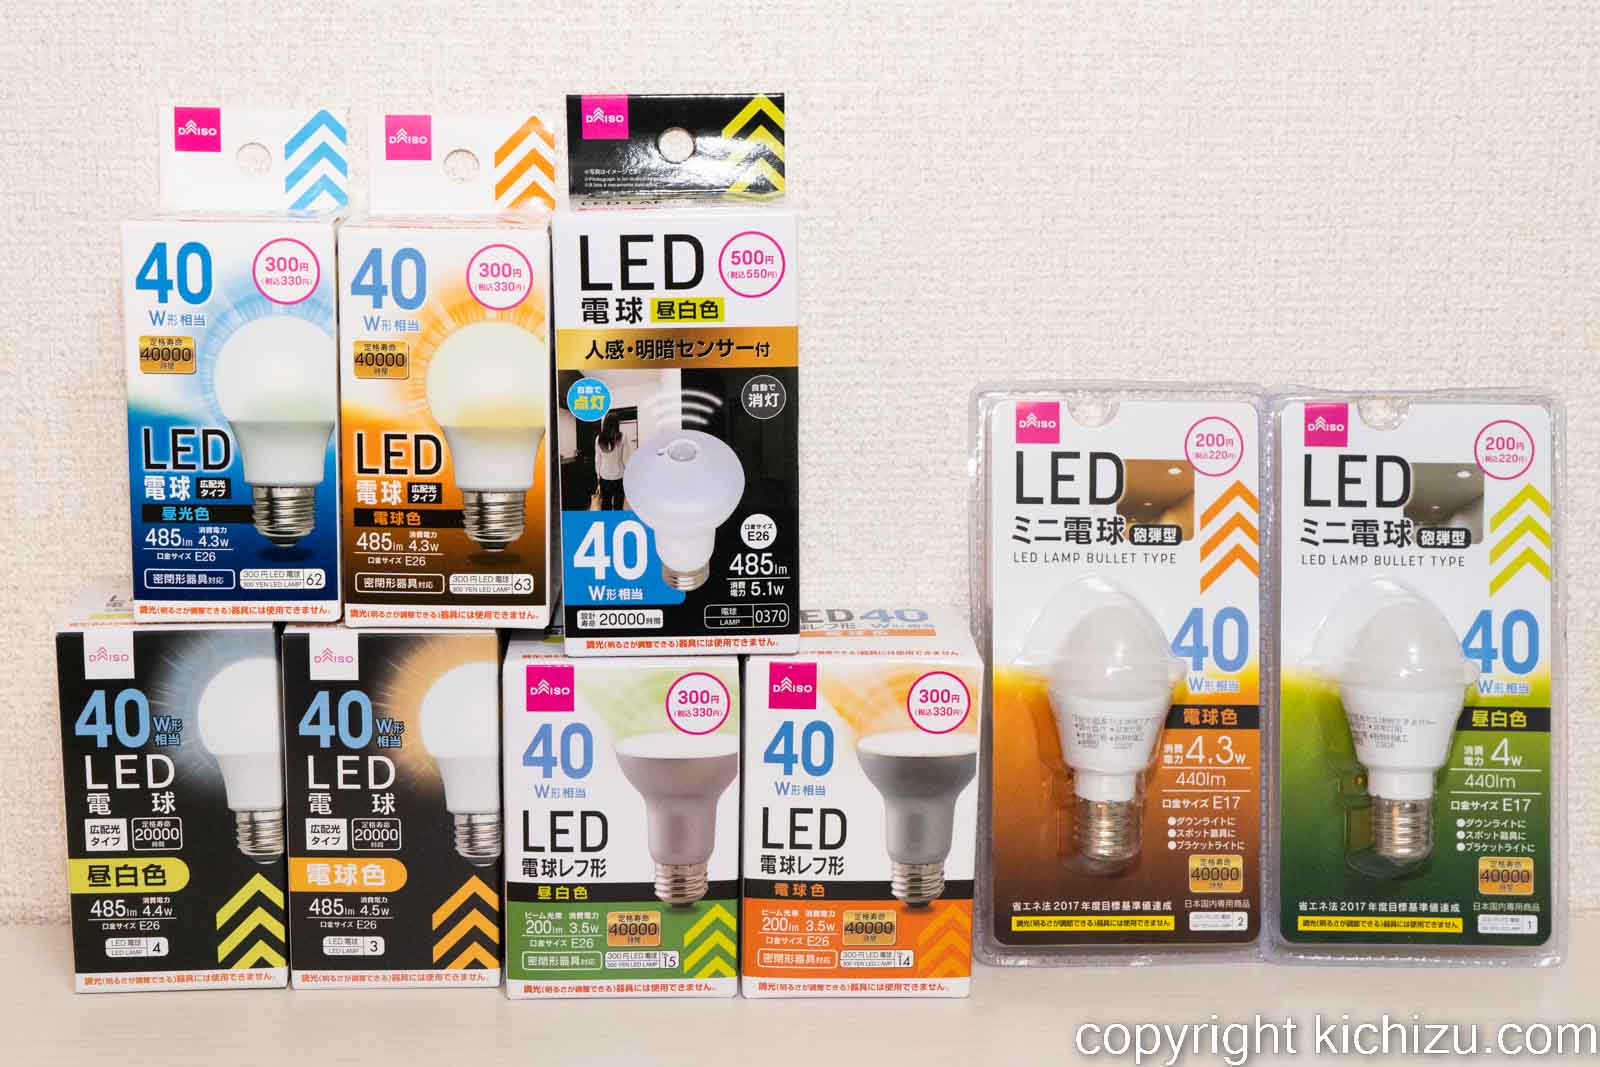 ダイソー LED 電球40ワット全種類